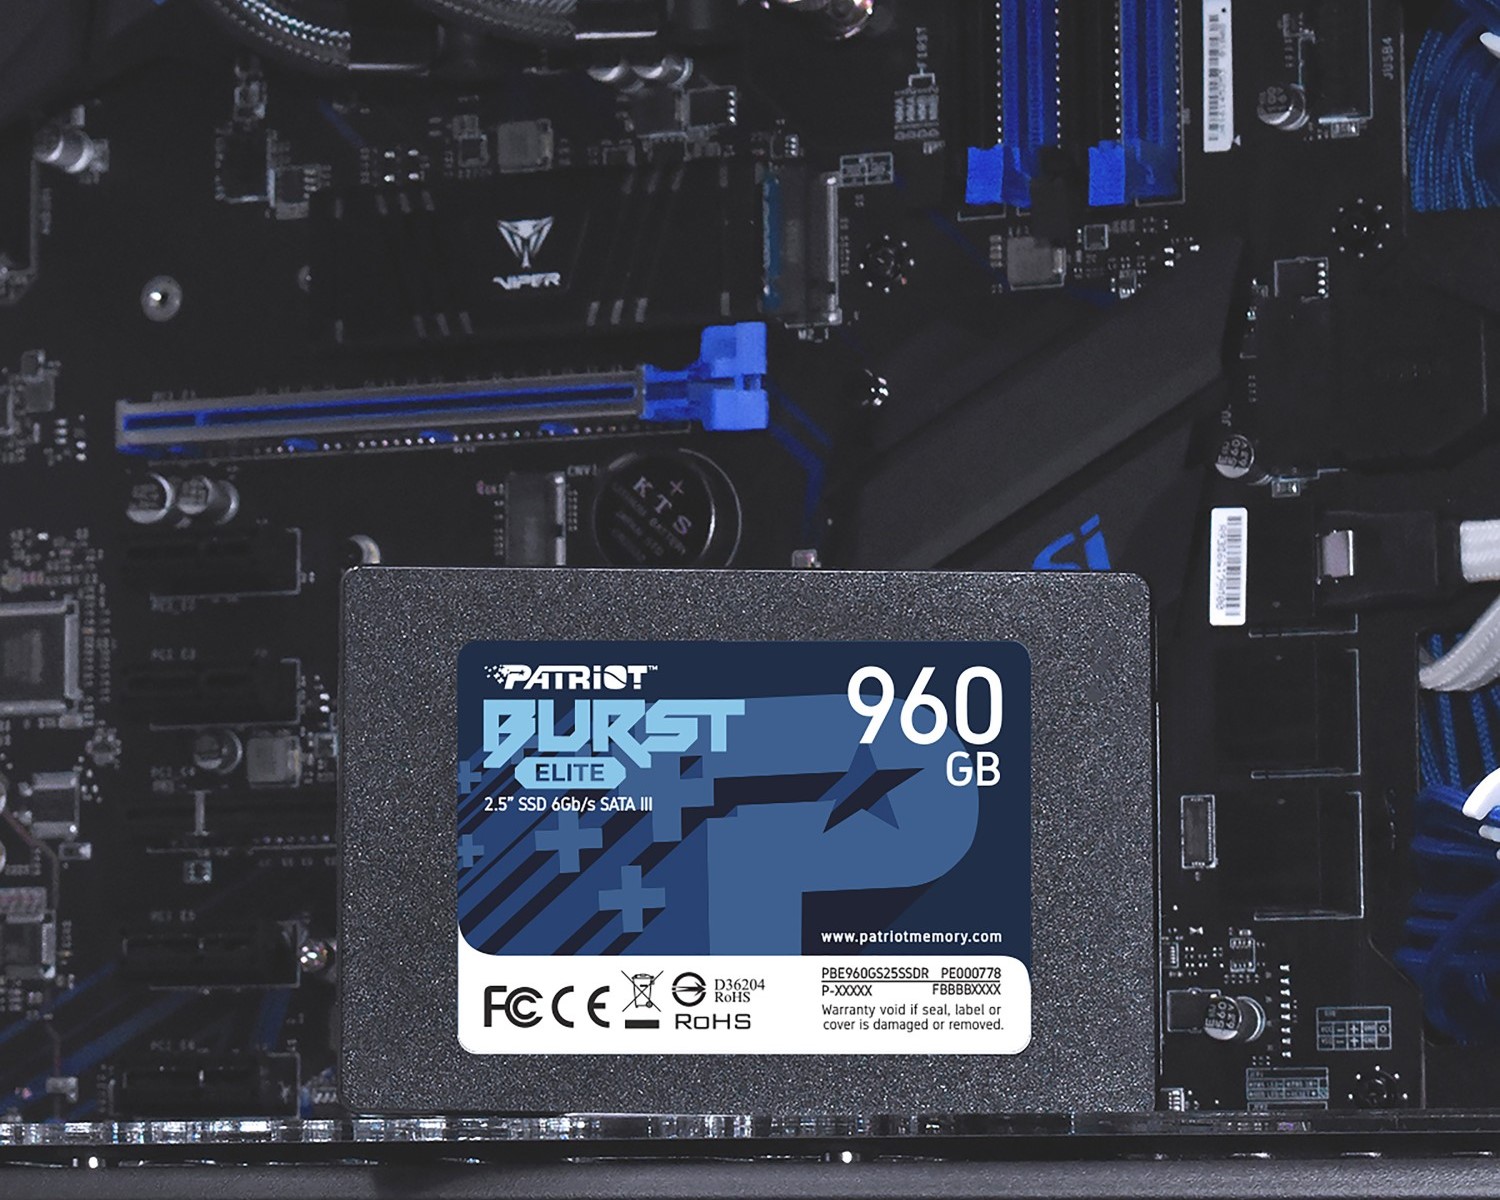 Interní SSD disk Patriot Burst Elite o kapacitě 960 GB nabízí vysoké přenosové rychlosti, aby zabránil zpomalování výkonu ze strany úložiště.